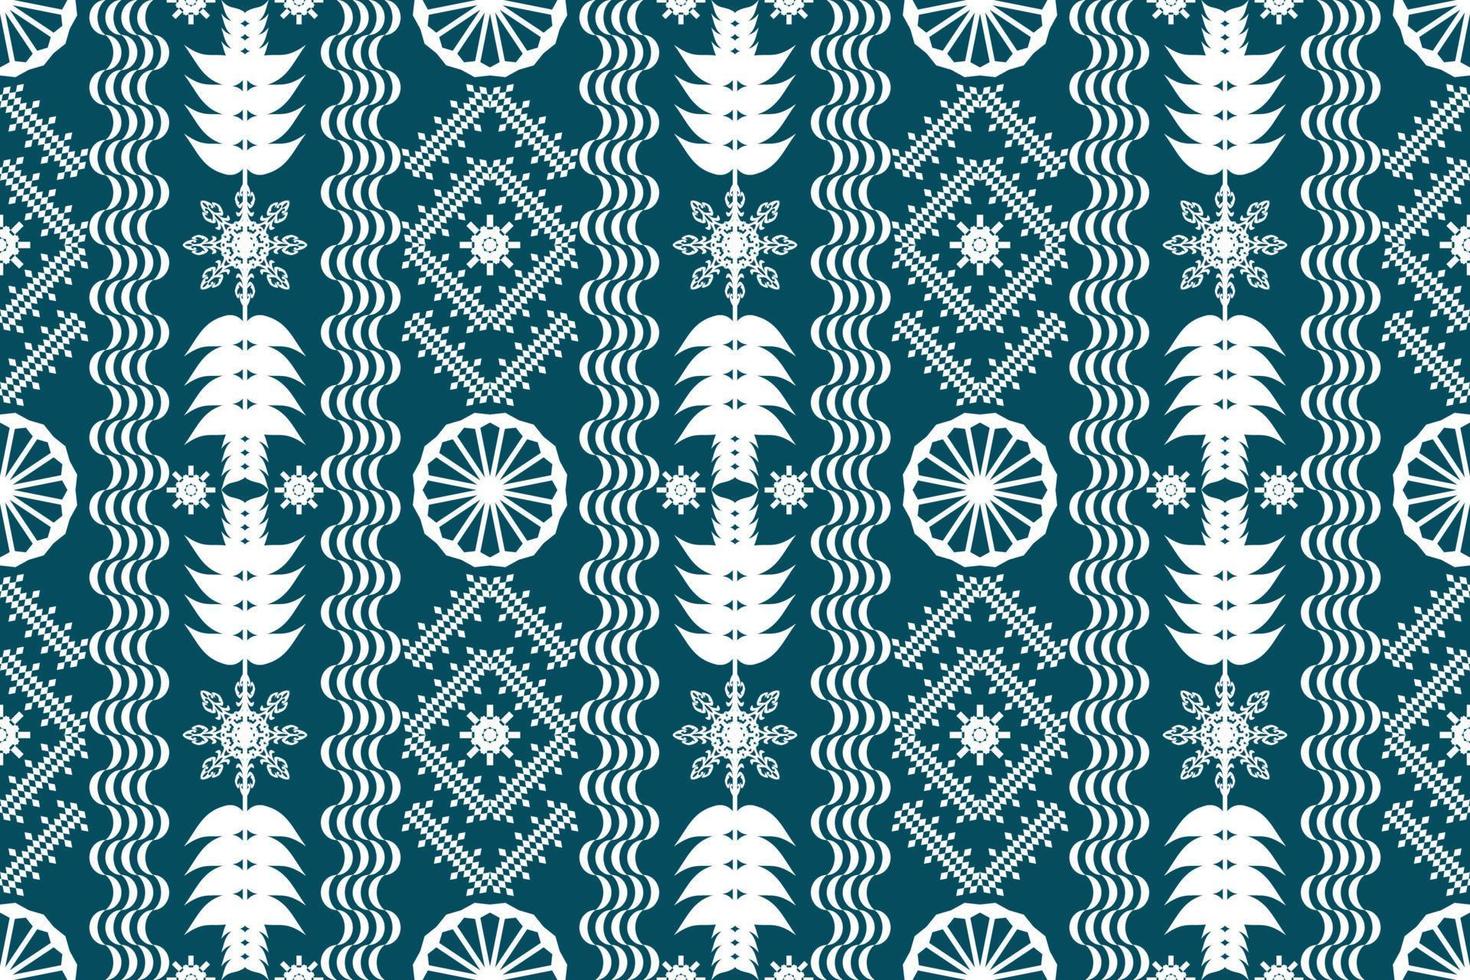 hermoso bordado.patrón oriental étnico geométrico tradicional.estilo azteca,abstracto,vector,ilustración.diseño para textura,tela,ropa,envoltura,moda,alfombra,impresión. vector